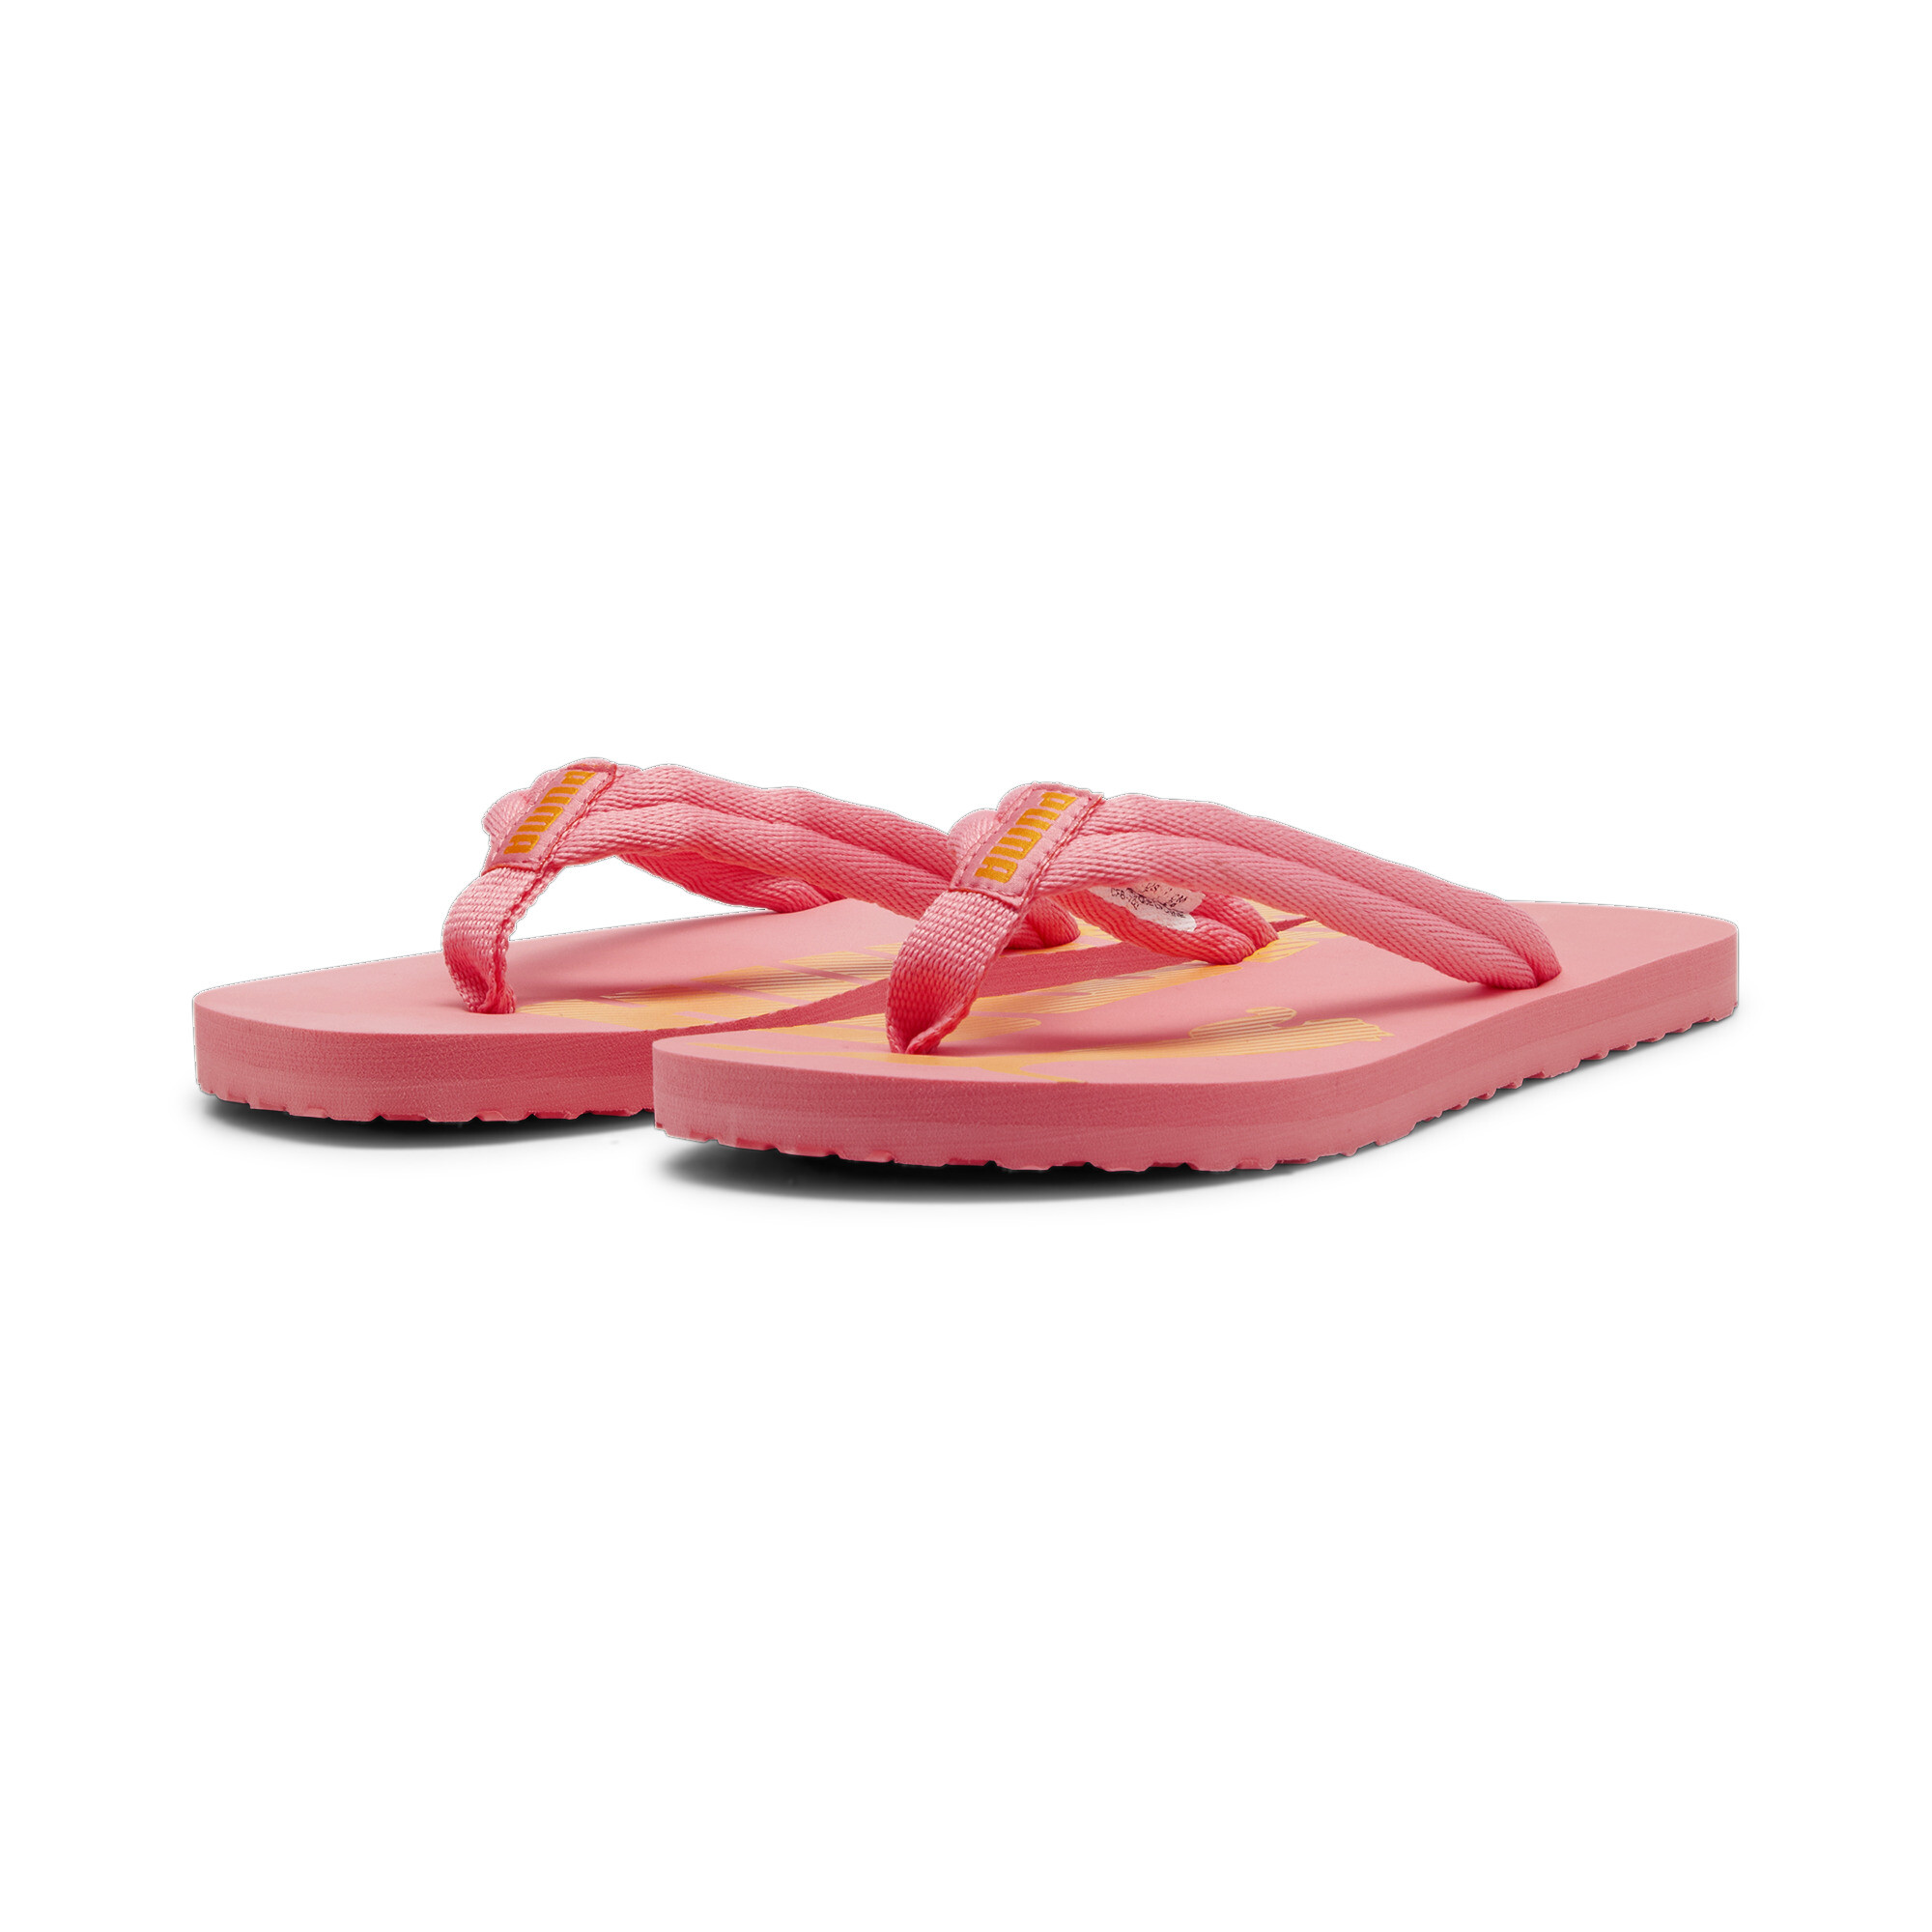 Men's PUMA Epic Flip V2 Sandals In Pink, Size EU 38